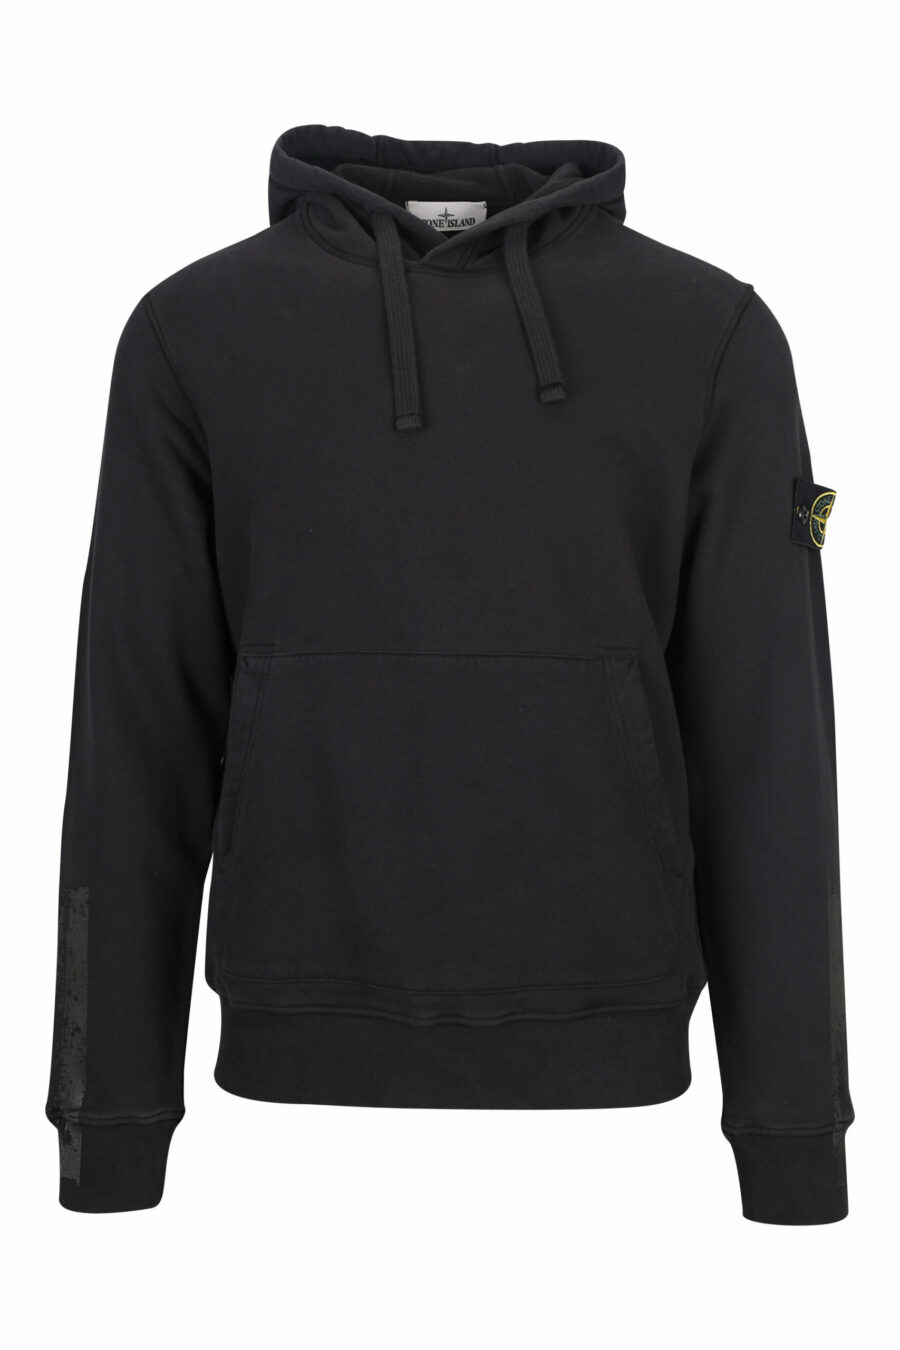 Schwarzes Kapuzensweatshirt mit seitlichem Logo - 8052572736230 skaliert